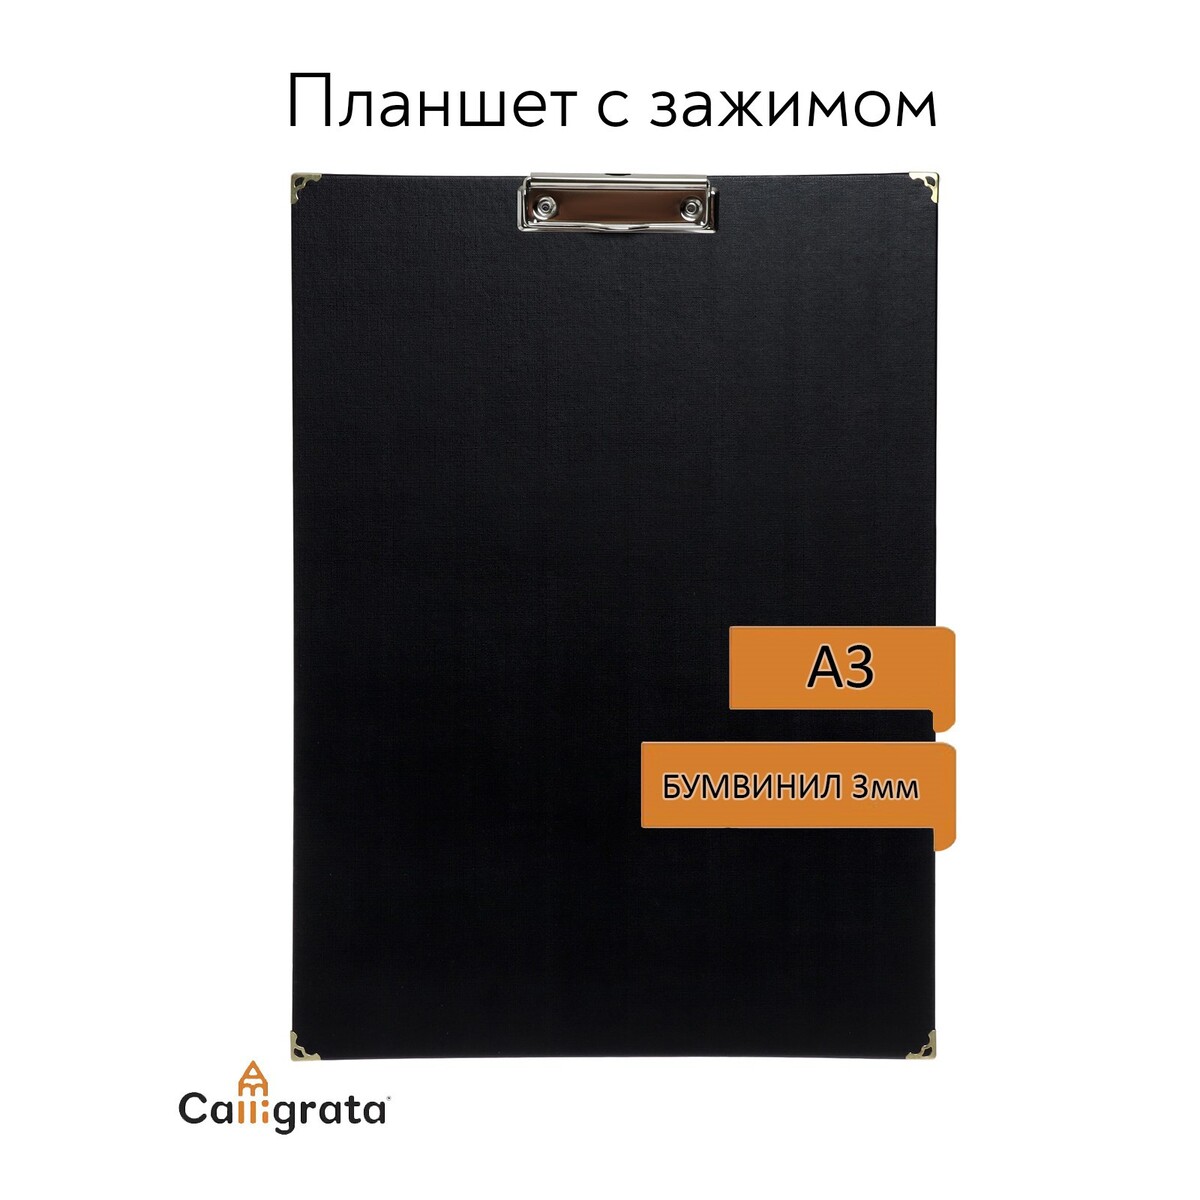 Планшет с зажимом а3, 420 х 320 мм, покрыт высококачественным бумвинилом, с металлическими уголками, черный (клипборд) планшет с зажимом а3 420 х 320 мм покрыт высококачественным бумвинилом клипборд